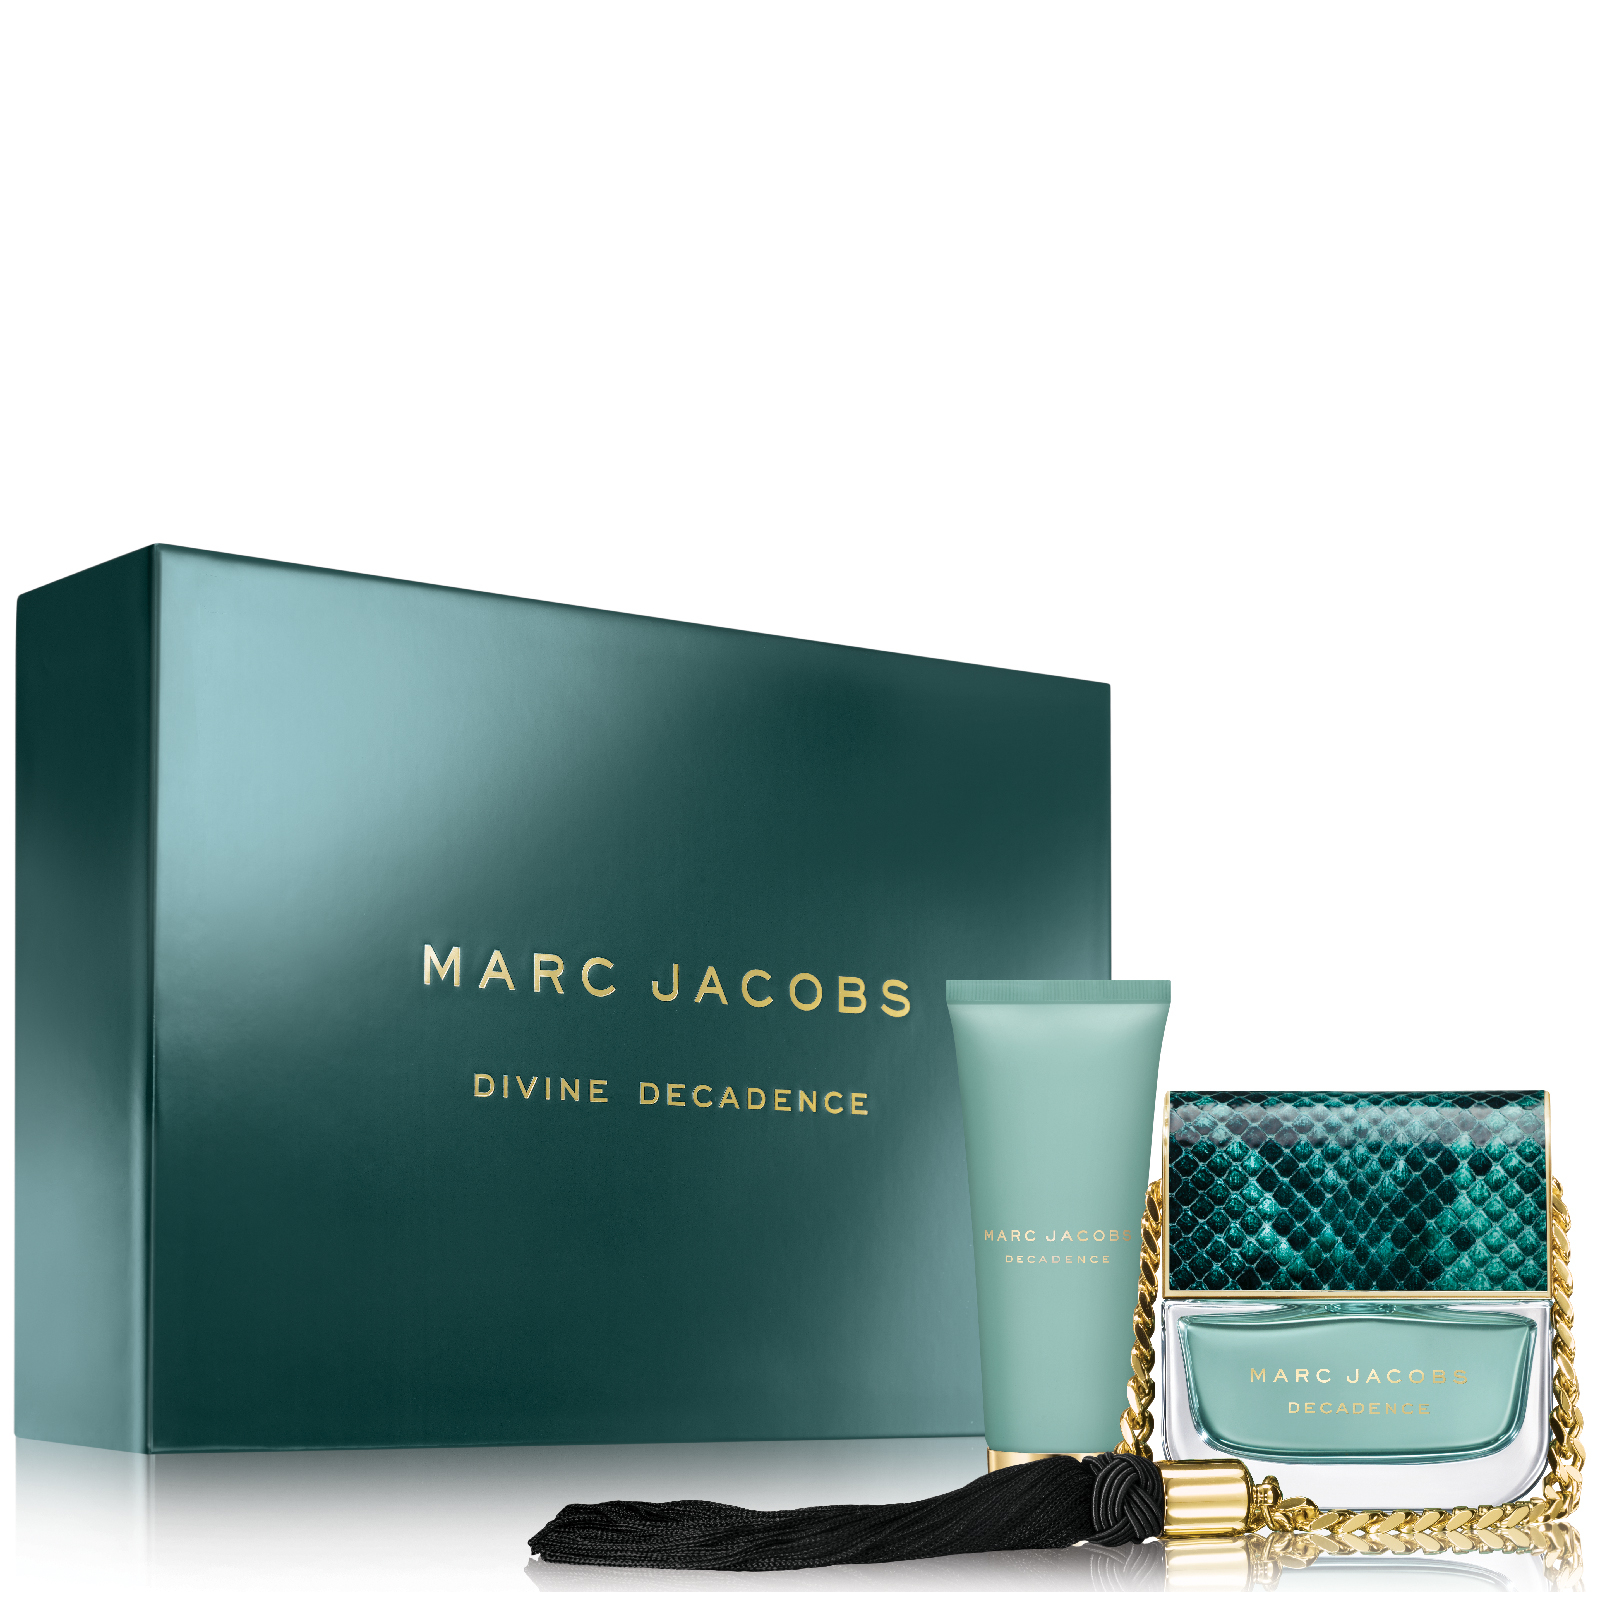 Marc Jacobs Divine Decadence Eau de Parfum Coffret Set